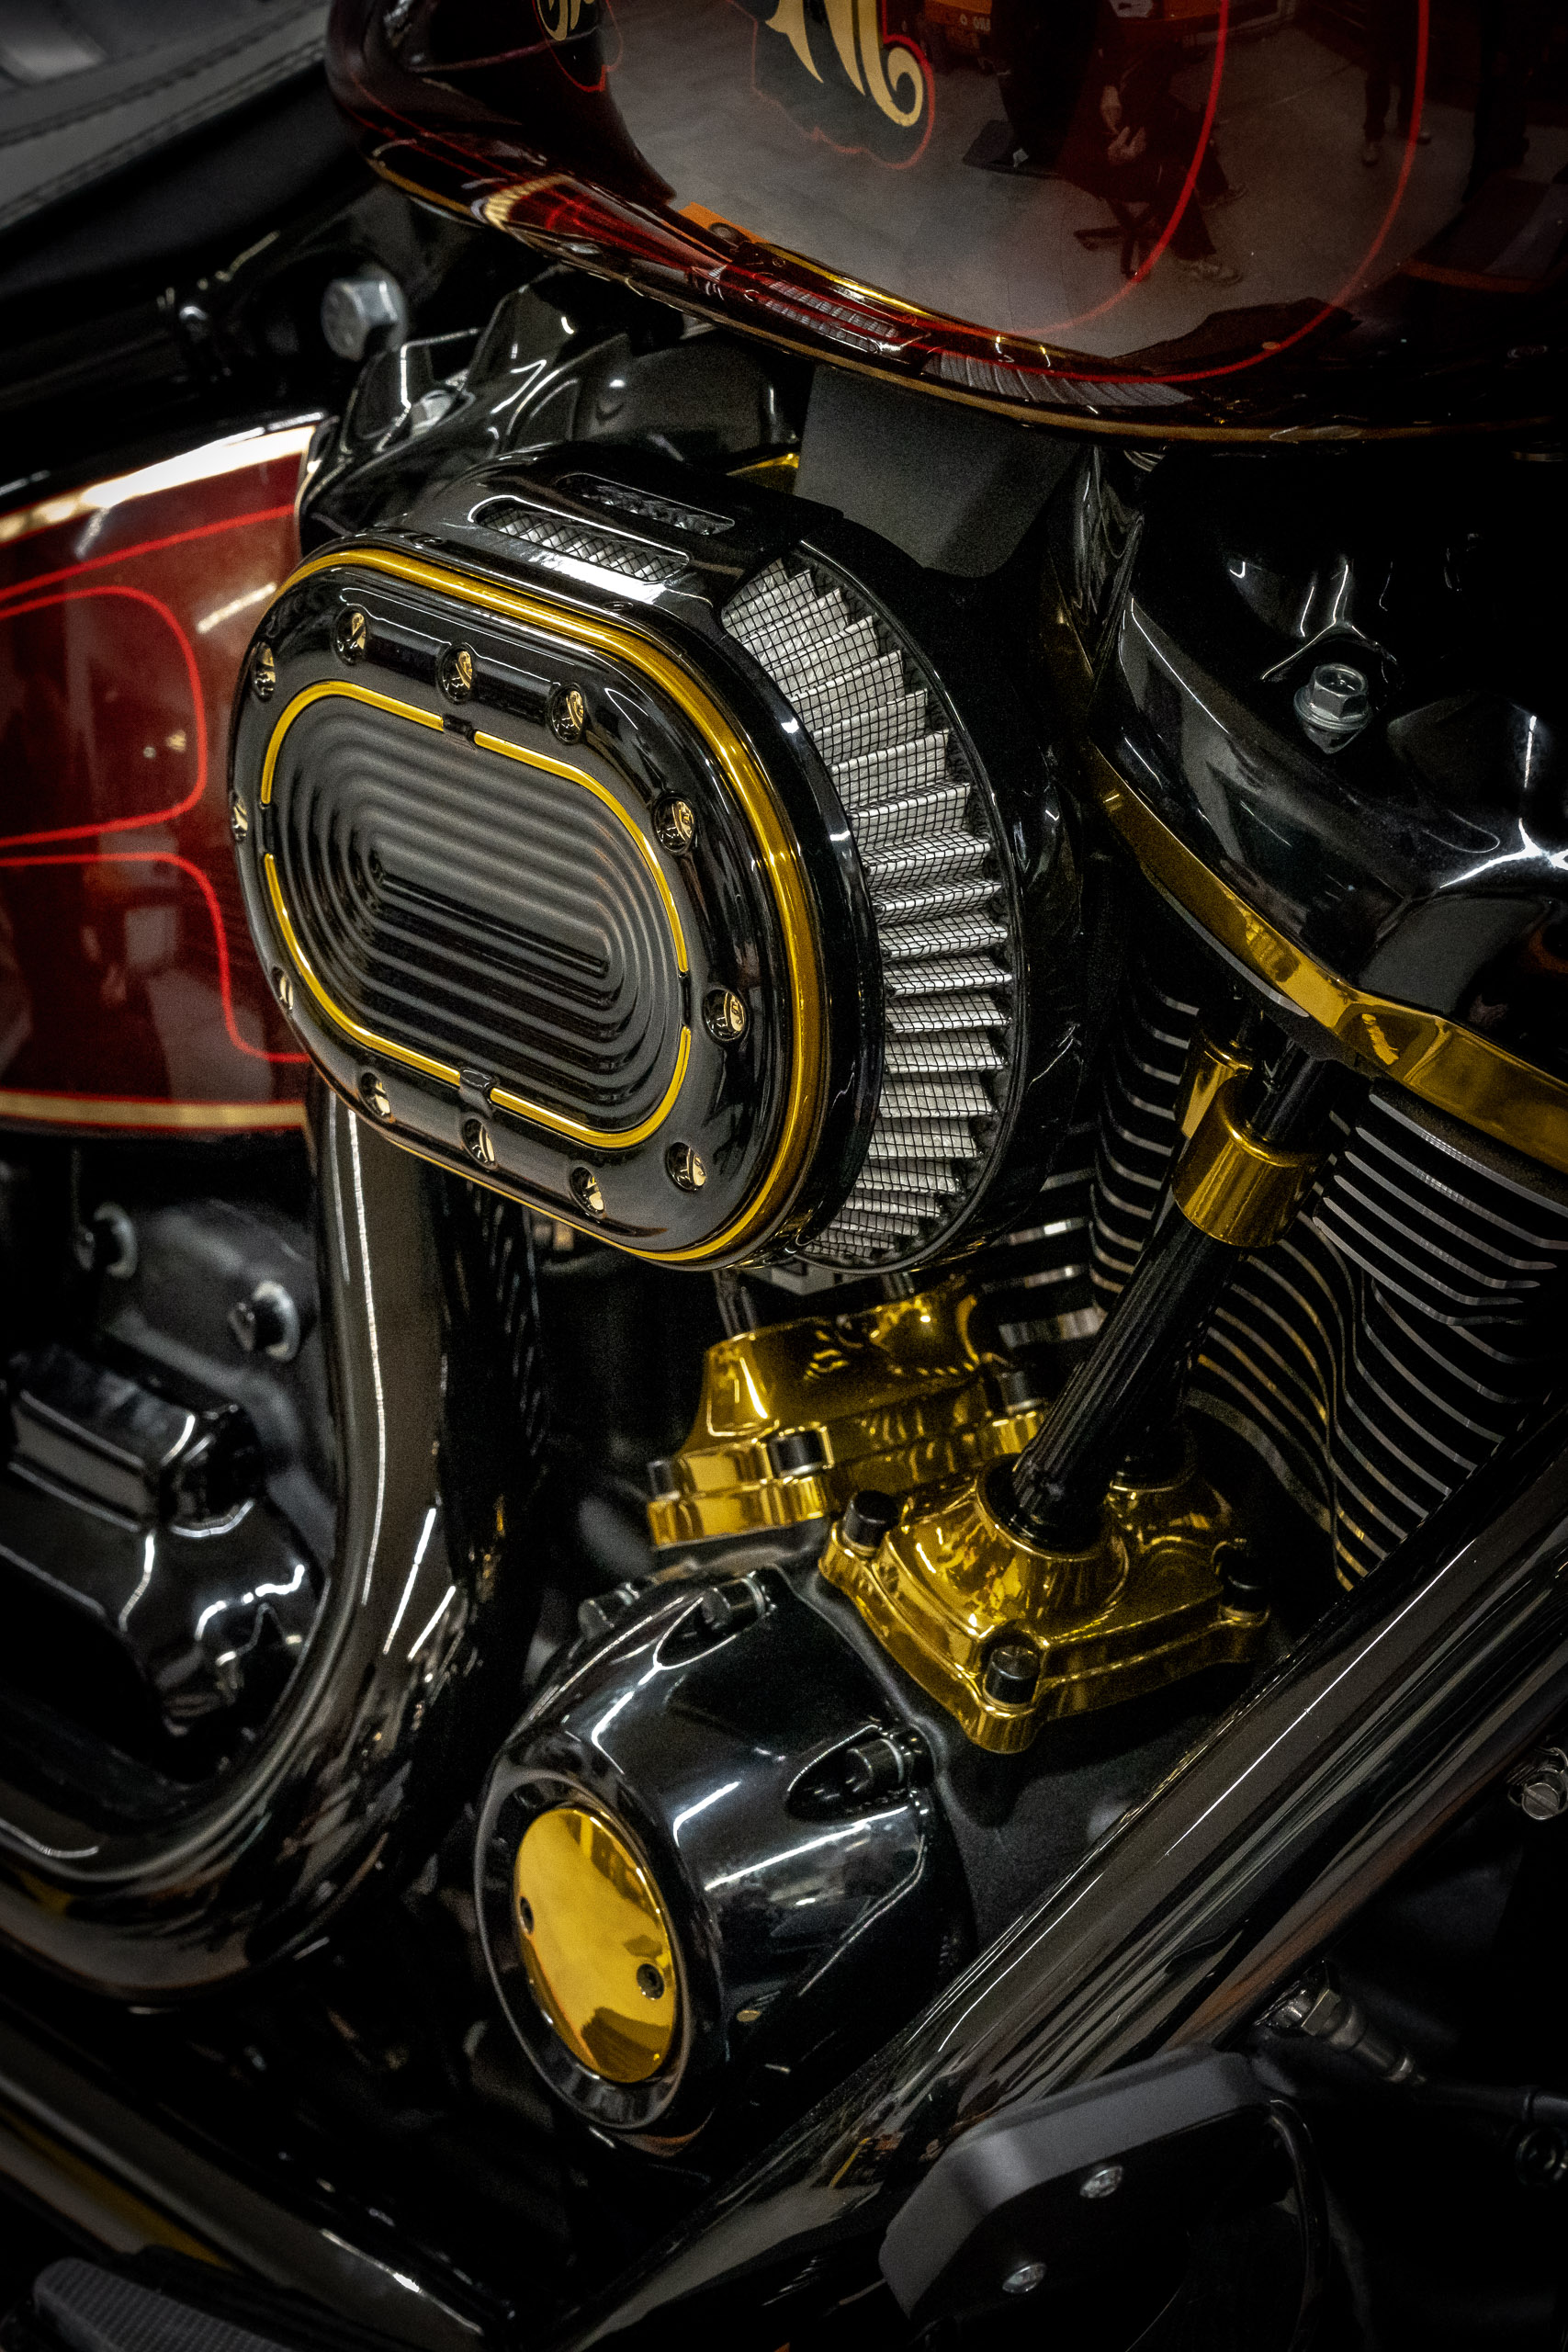 Harley-Davidson Custom Parts, Ersatzteile u. Motorradkleidung